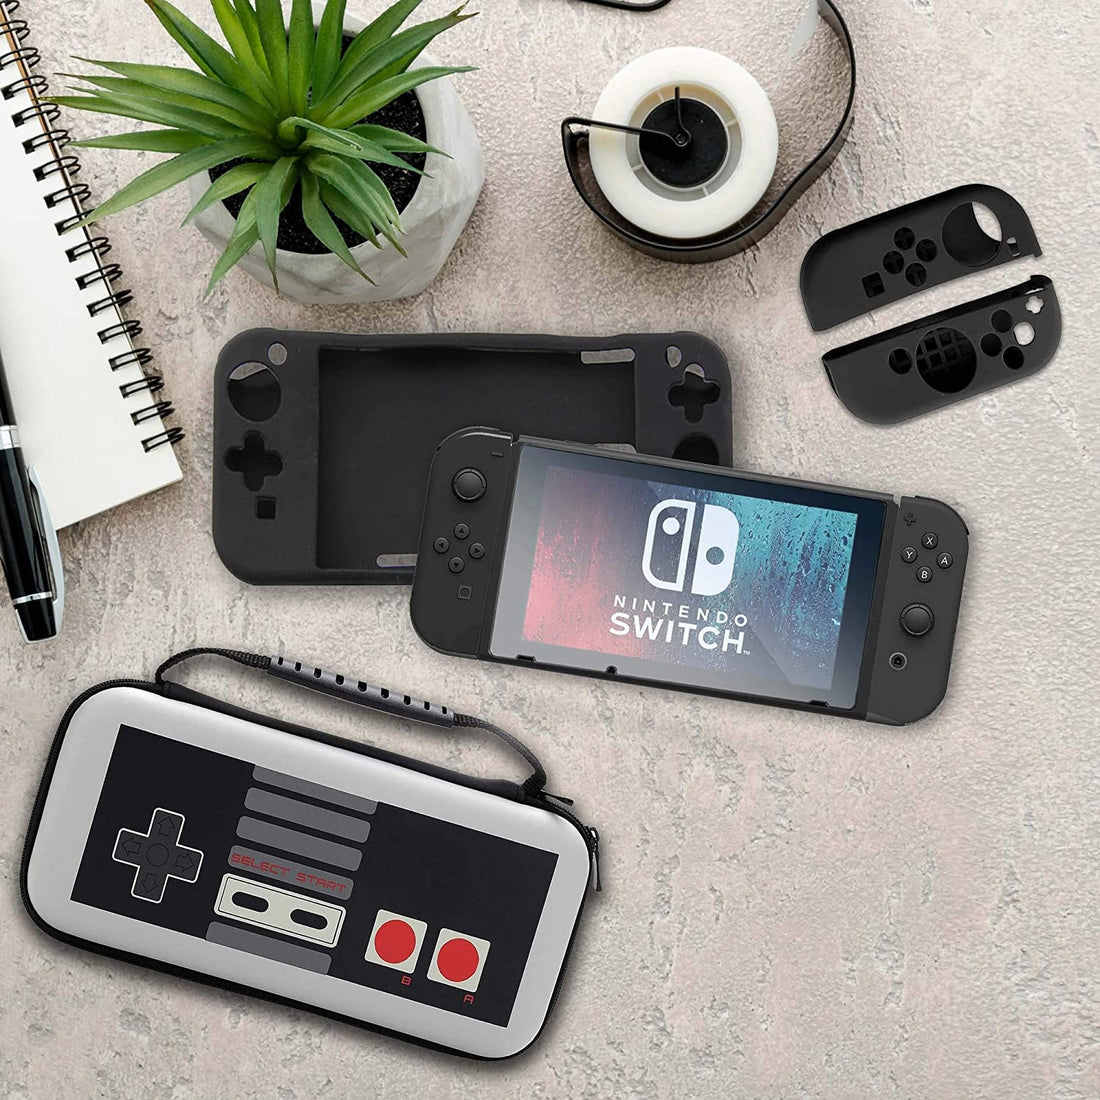 Personaliza tu Nintendo Switch con estos tips - Tienda Geek México | TiendaGeek.com